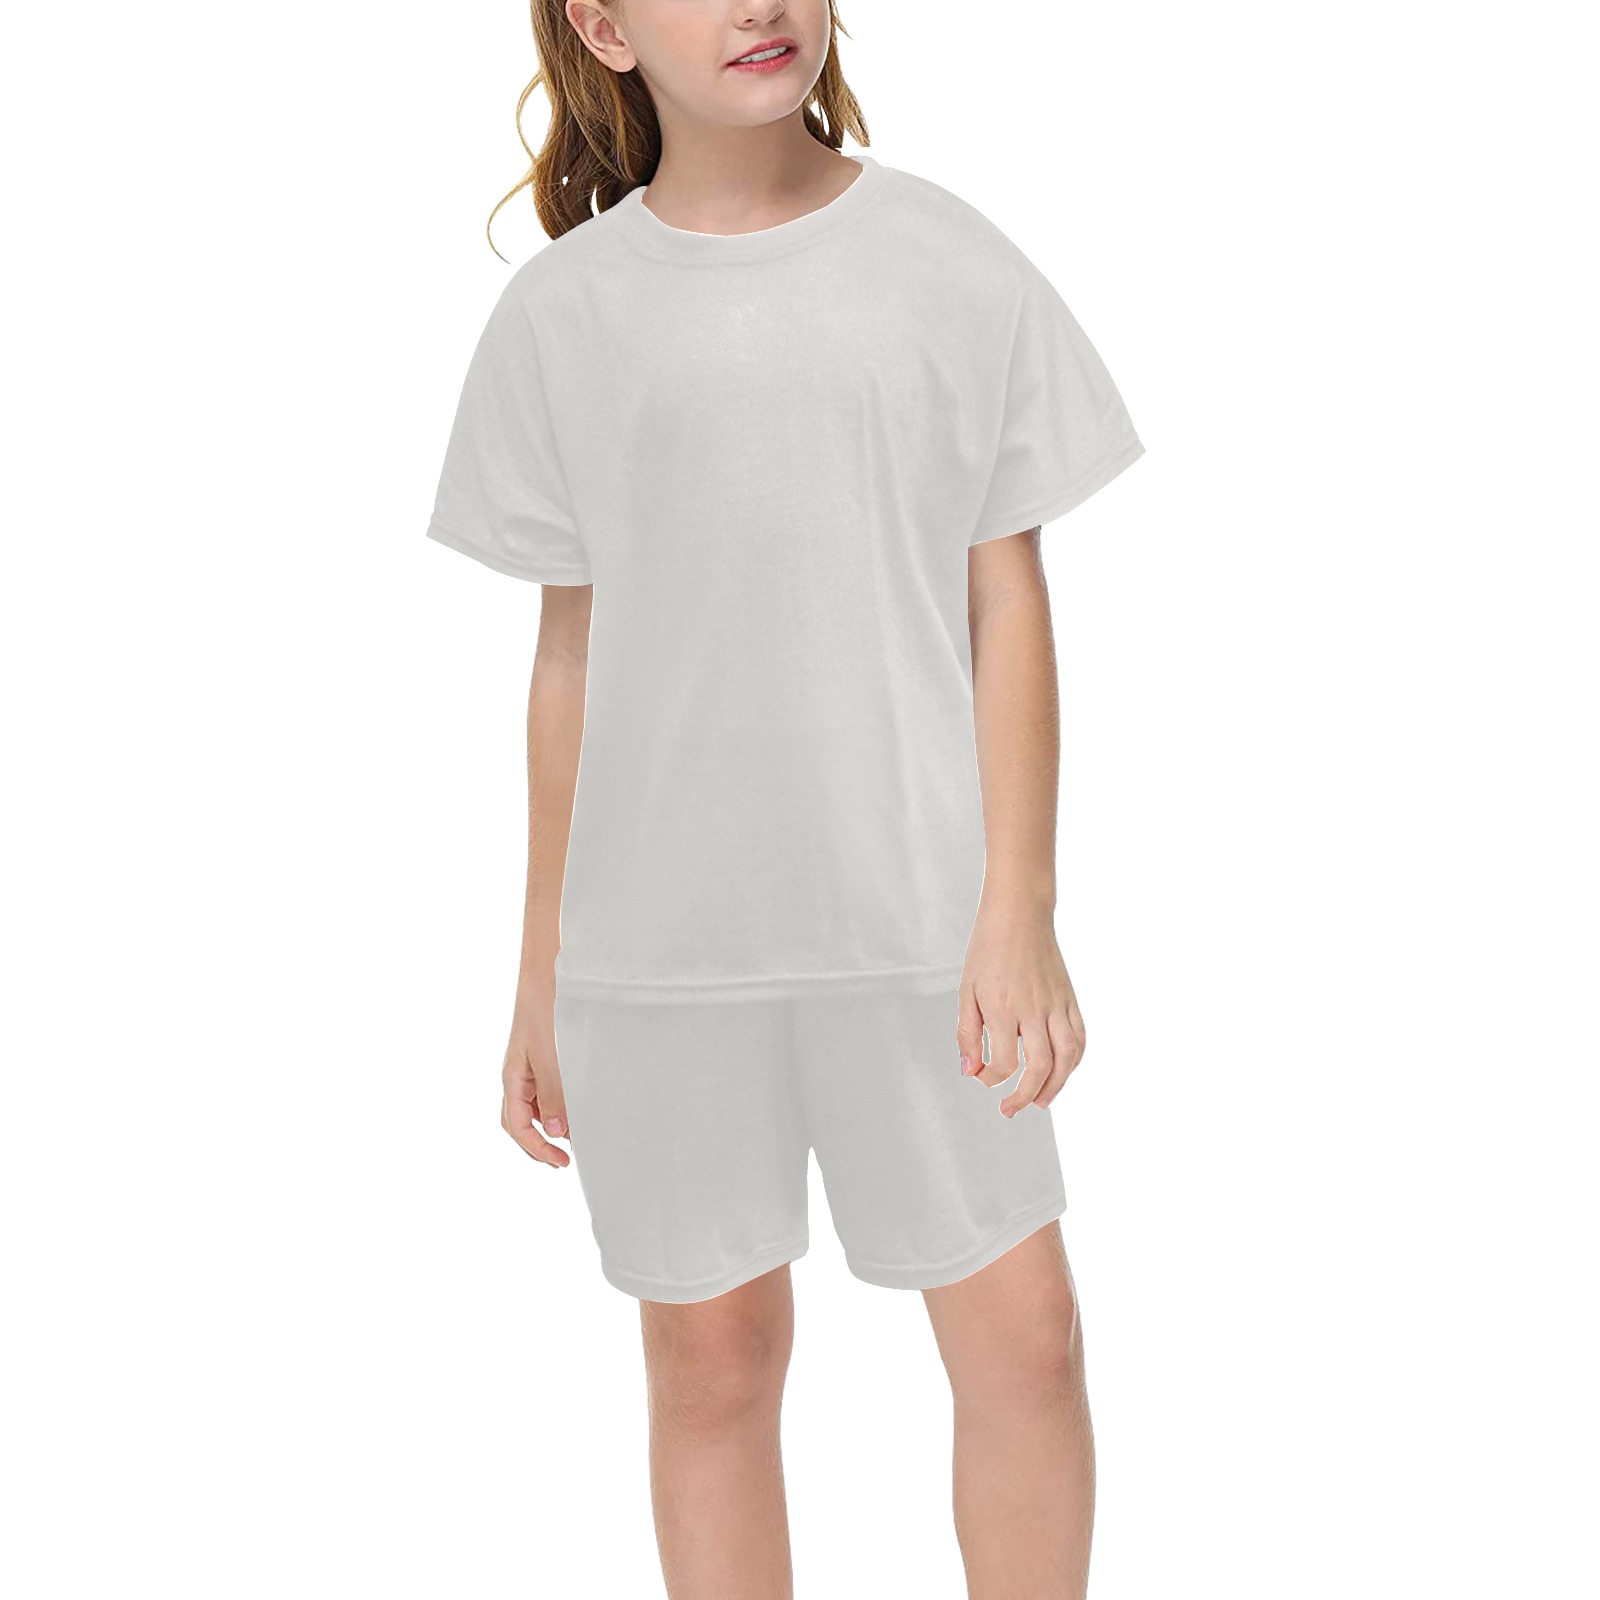 White Alyssum Big Girls' Short Pajama Set